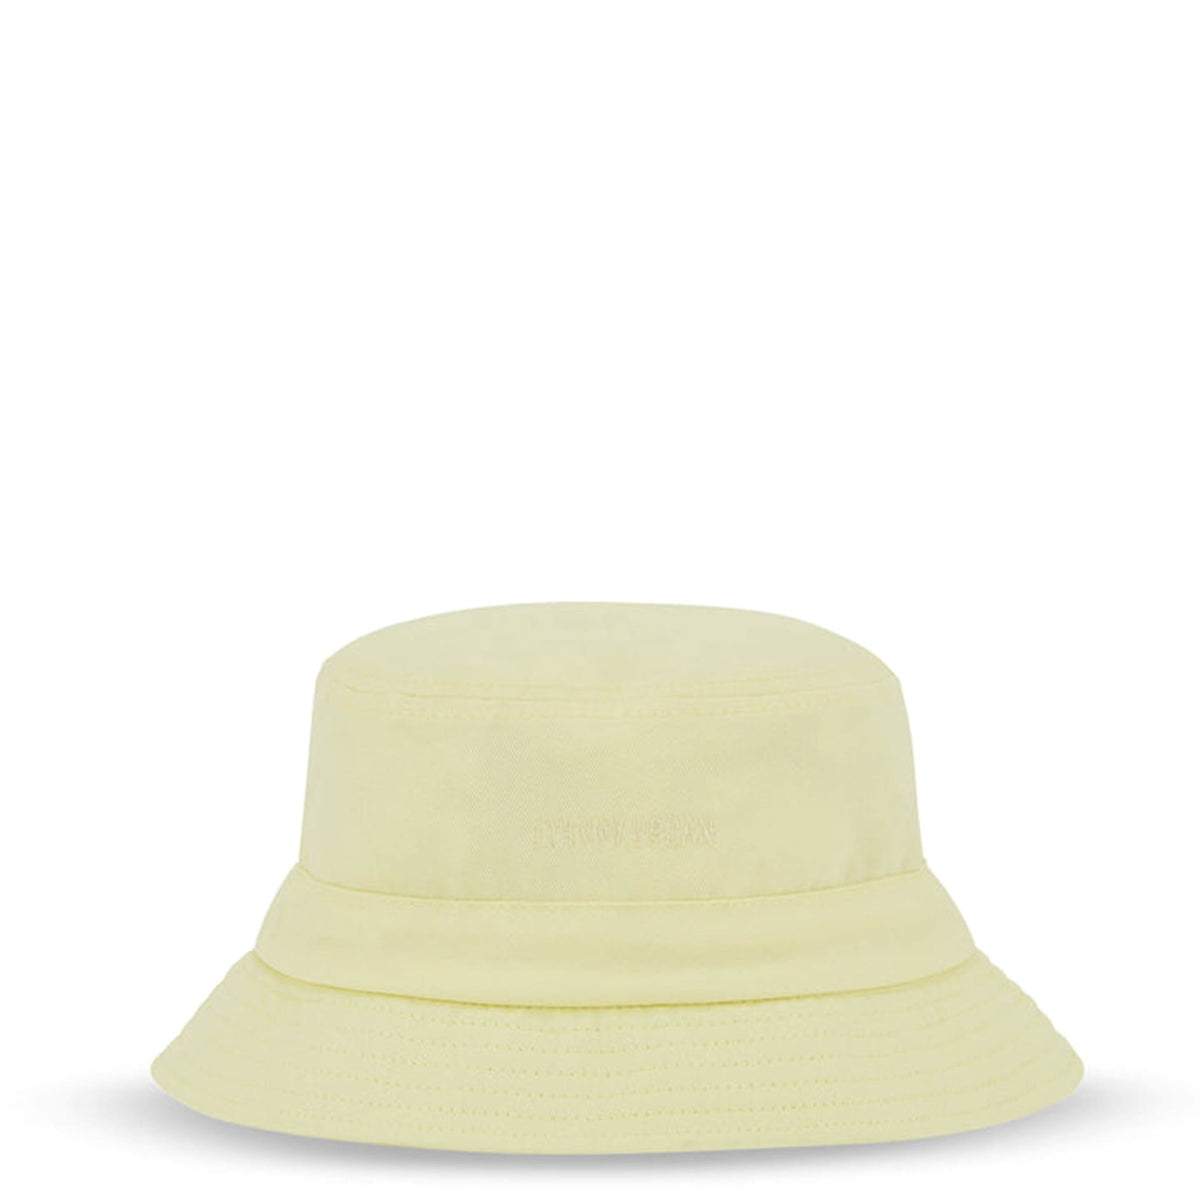 Fischer Hut / Bucket Hat, "Gill" PALE YELLOW, Johnny Urban